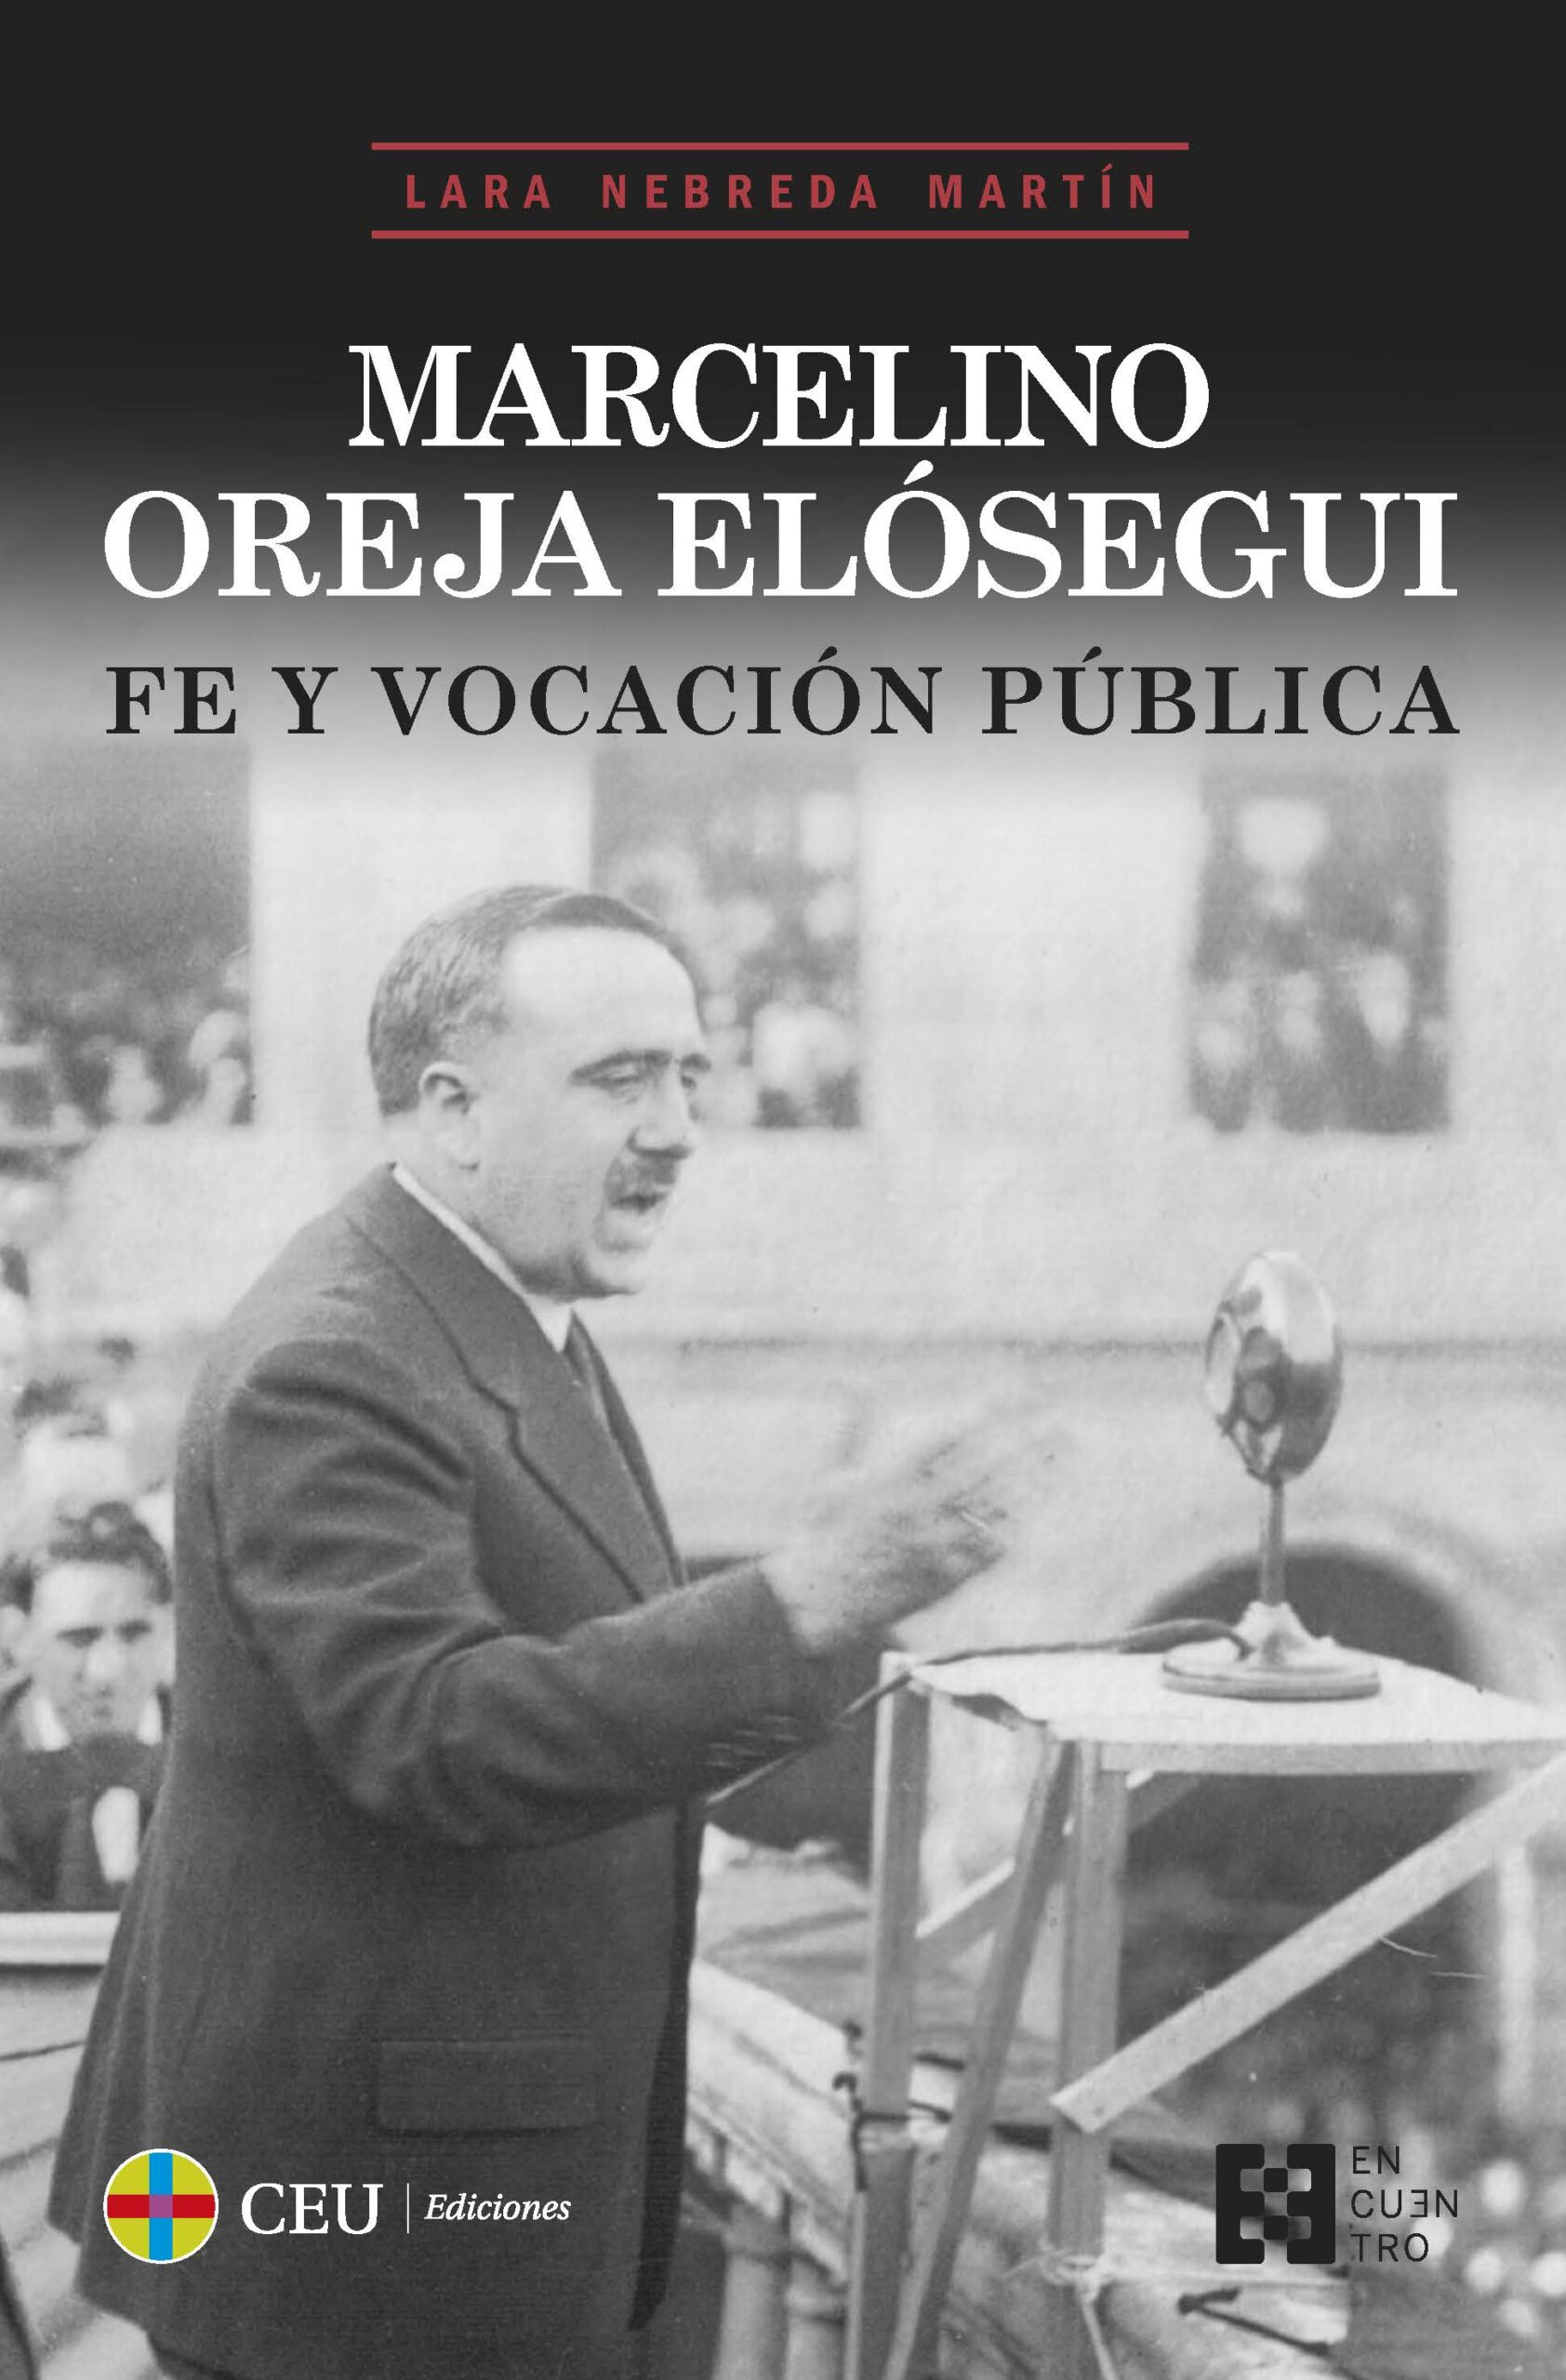 Imagen de portada del libro Marcelino Oreja Elósegui